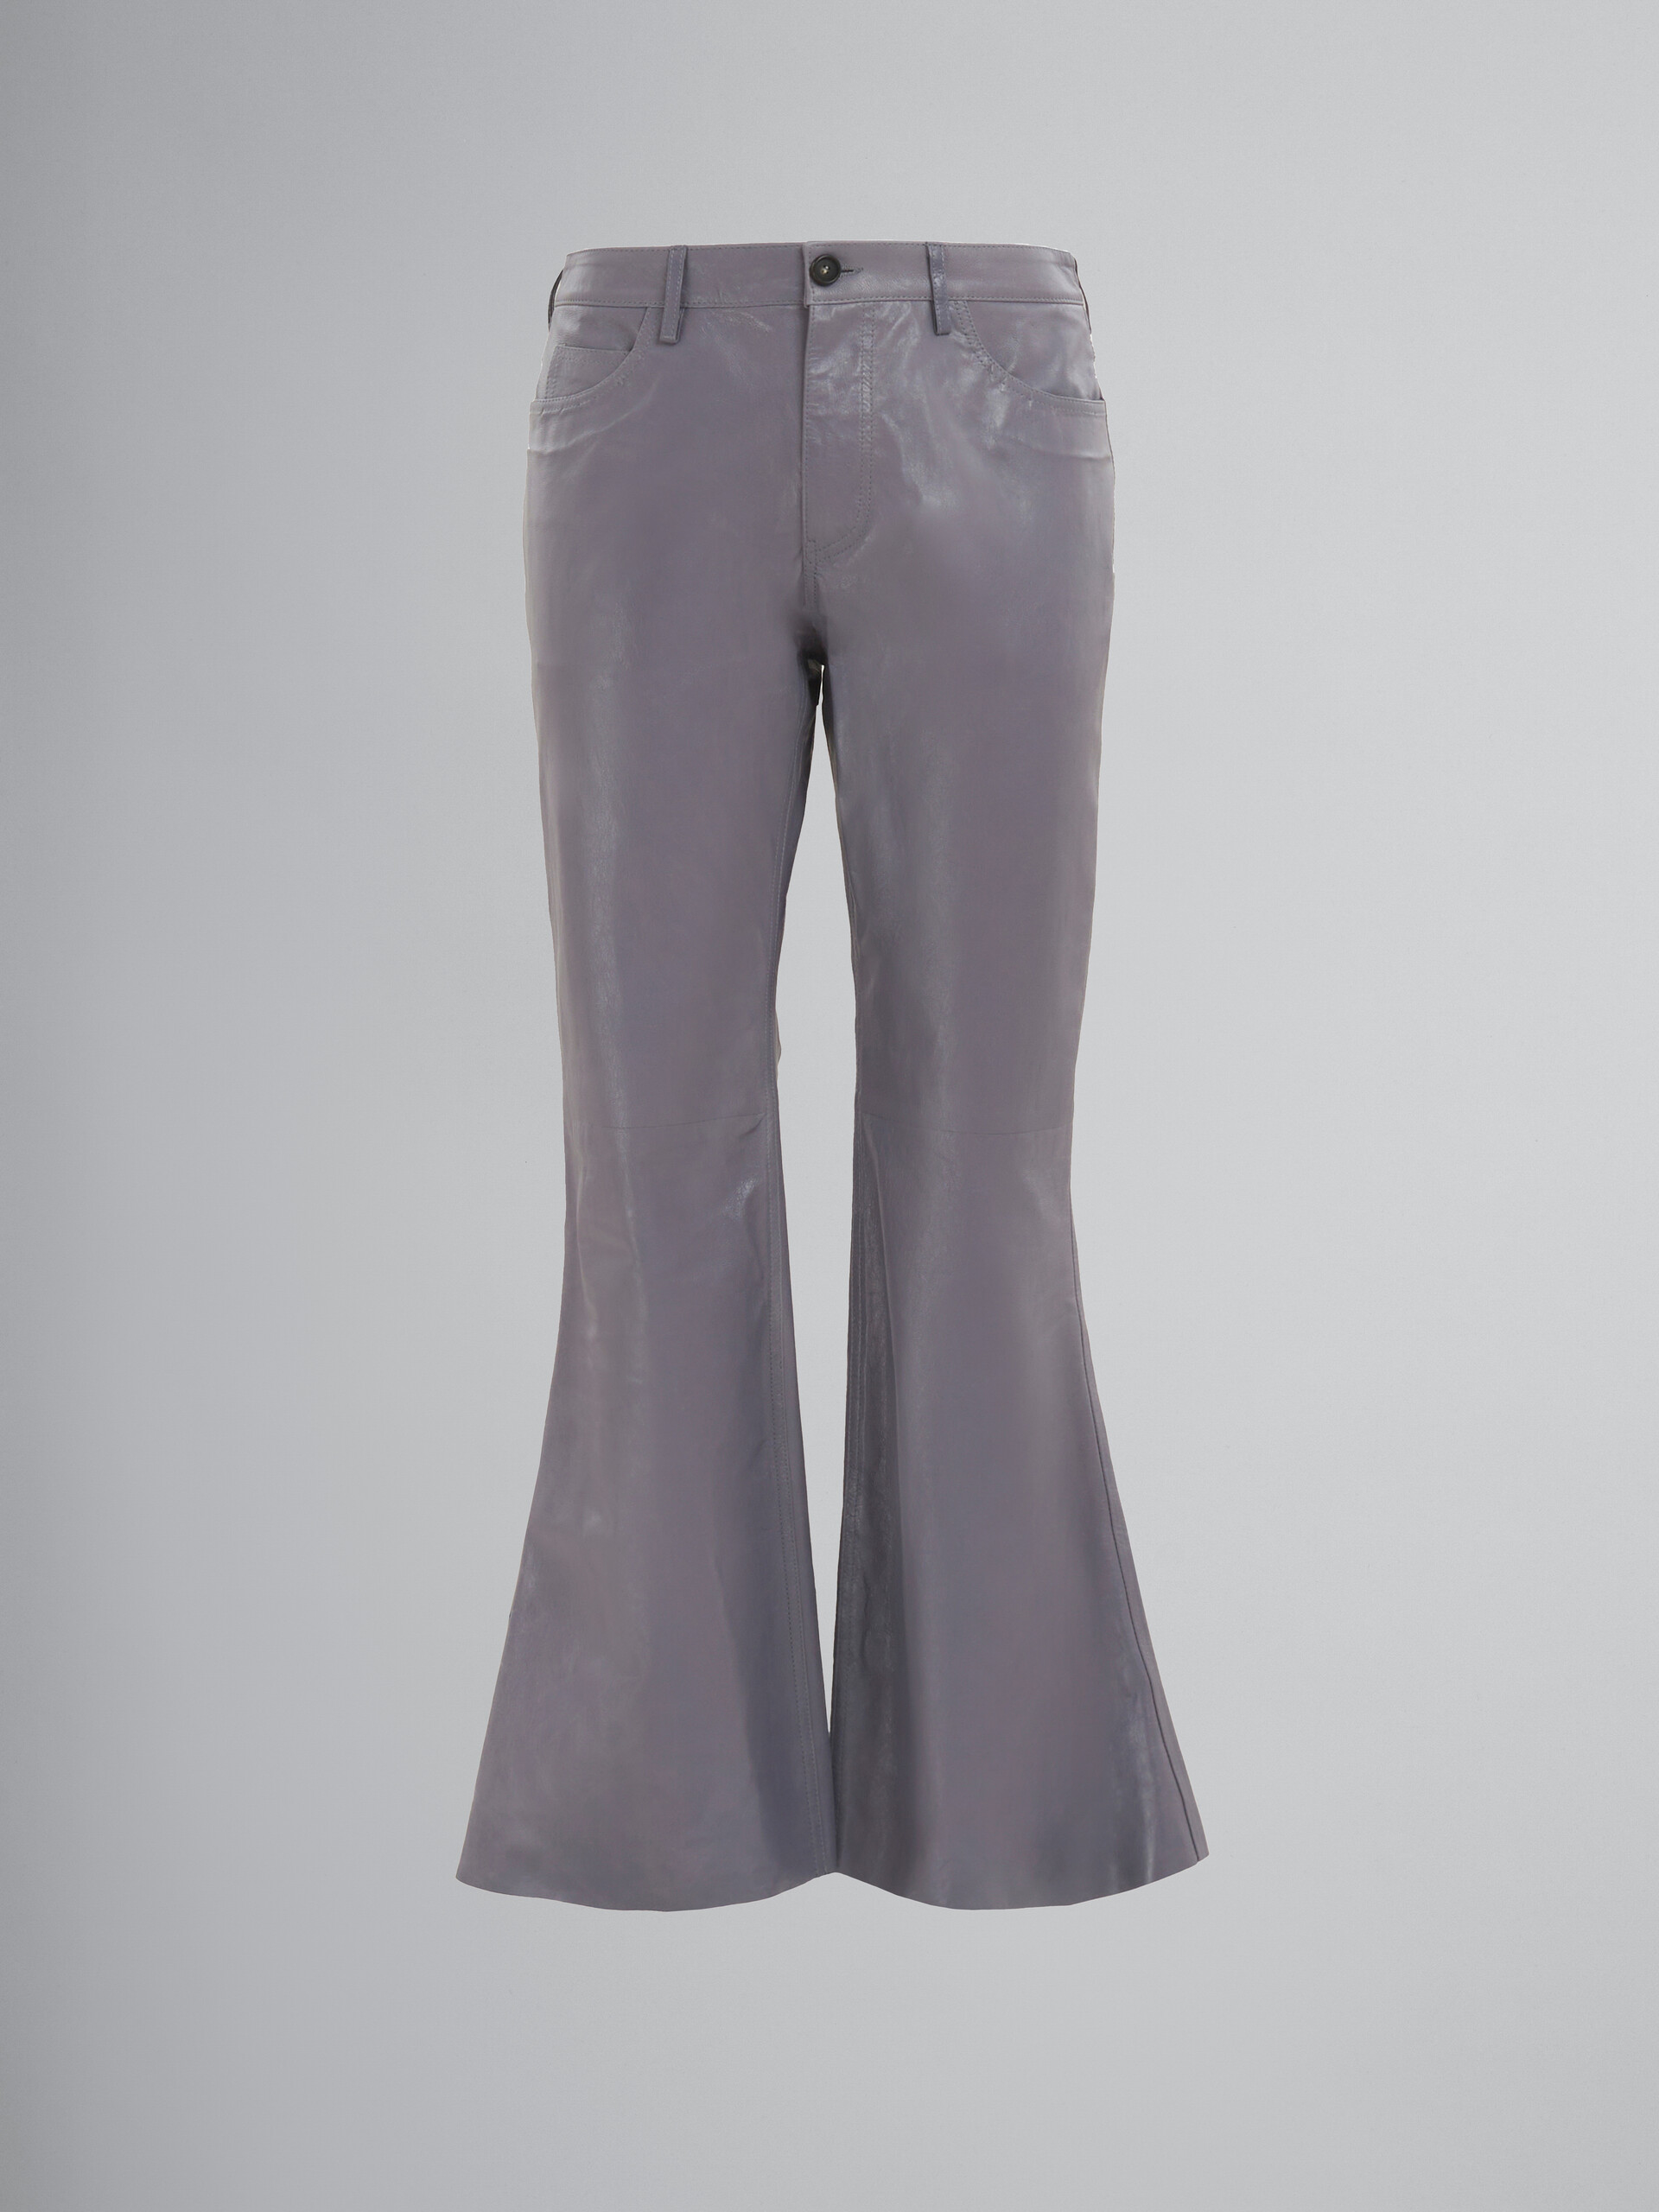 Graue ausgestellte Hose aus glänzendem Leder - Hosen - Image 1